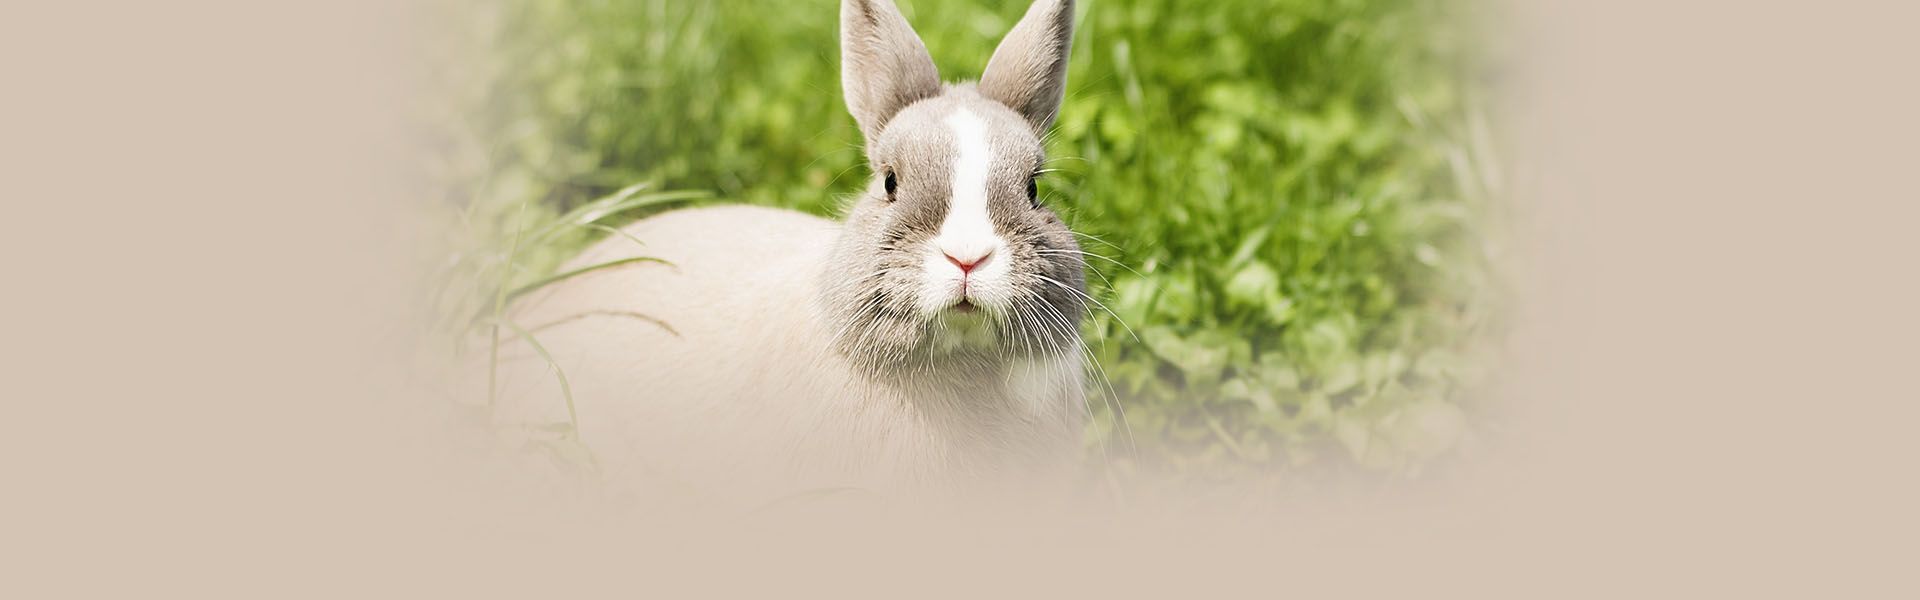 little rabbit grass closeup